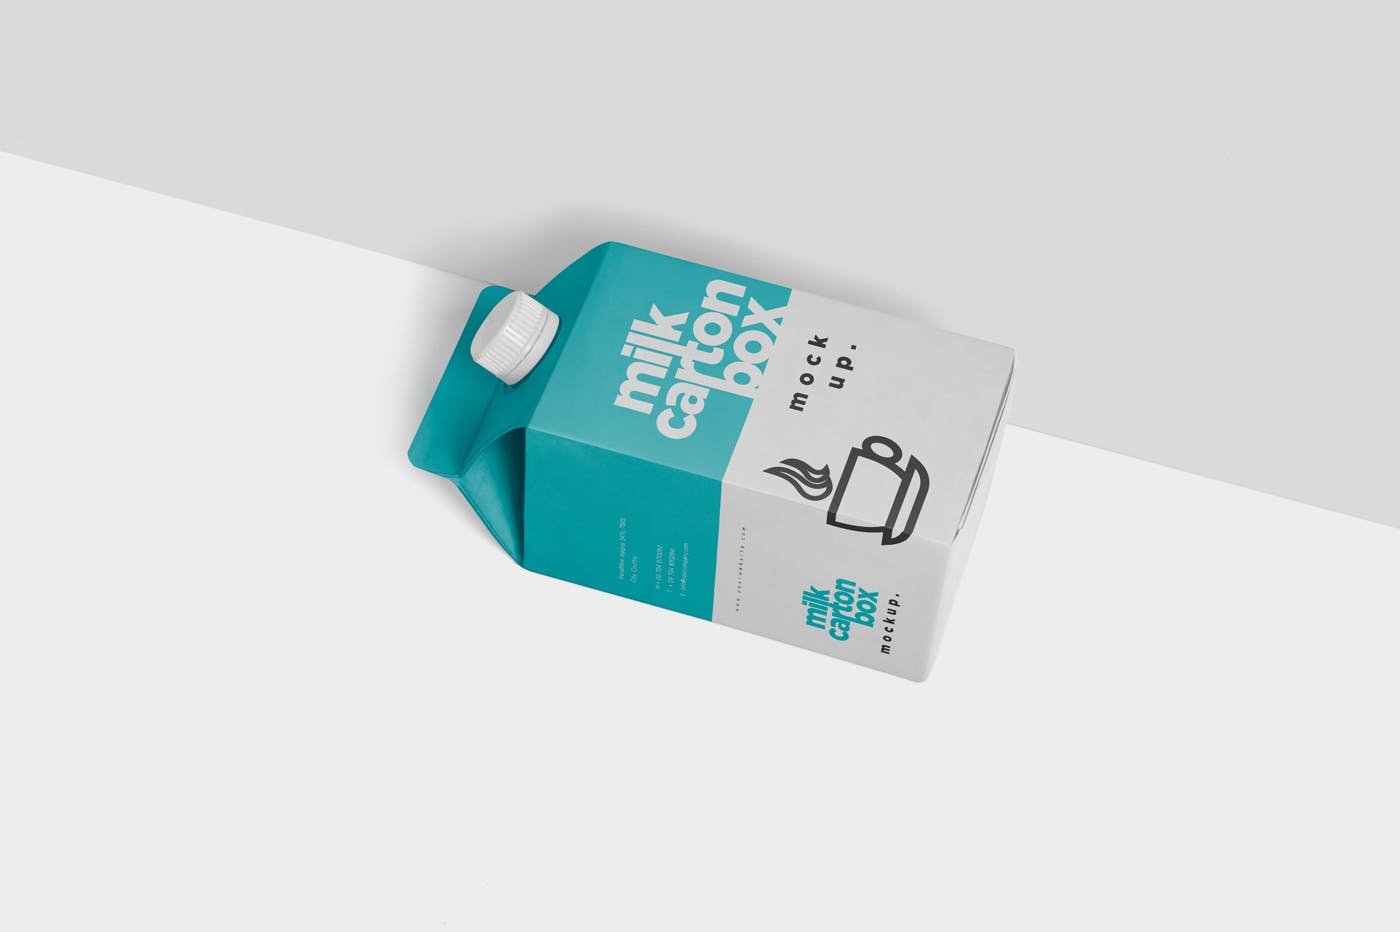 果汁/牛奶饮料纸盒包装效果图样机 Juice – Milk Mockup in 500ml Carton Box插图(4)